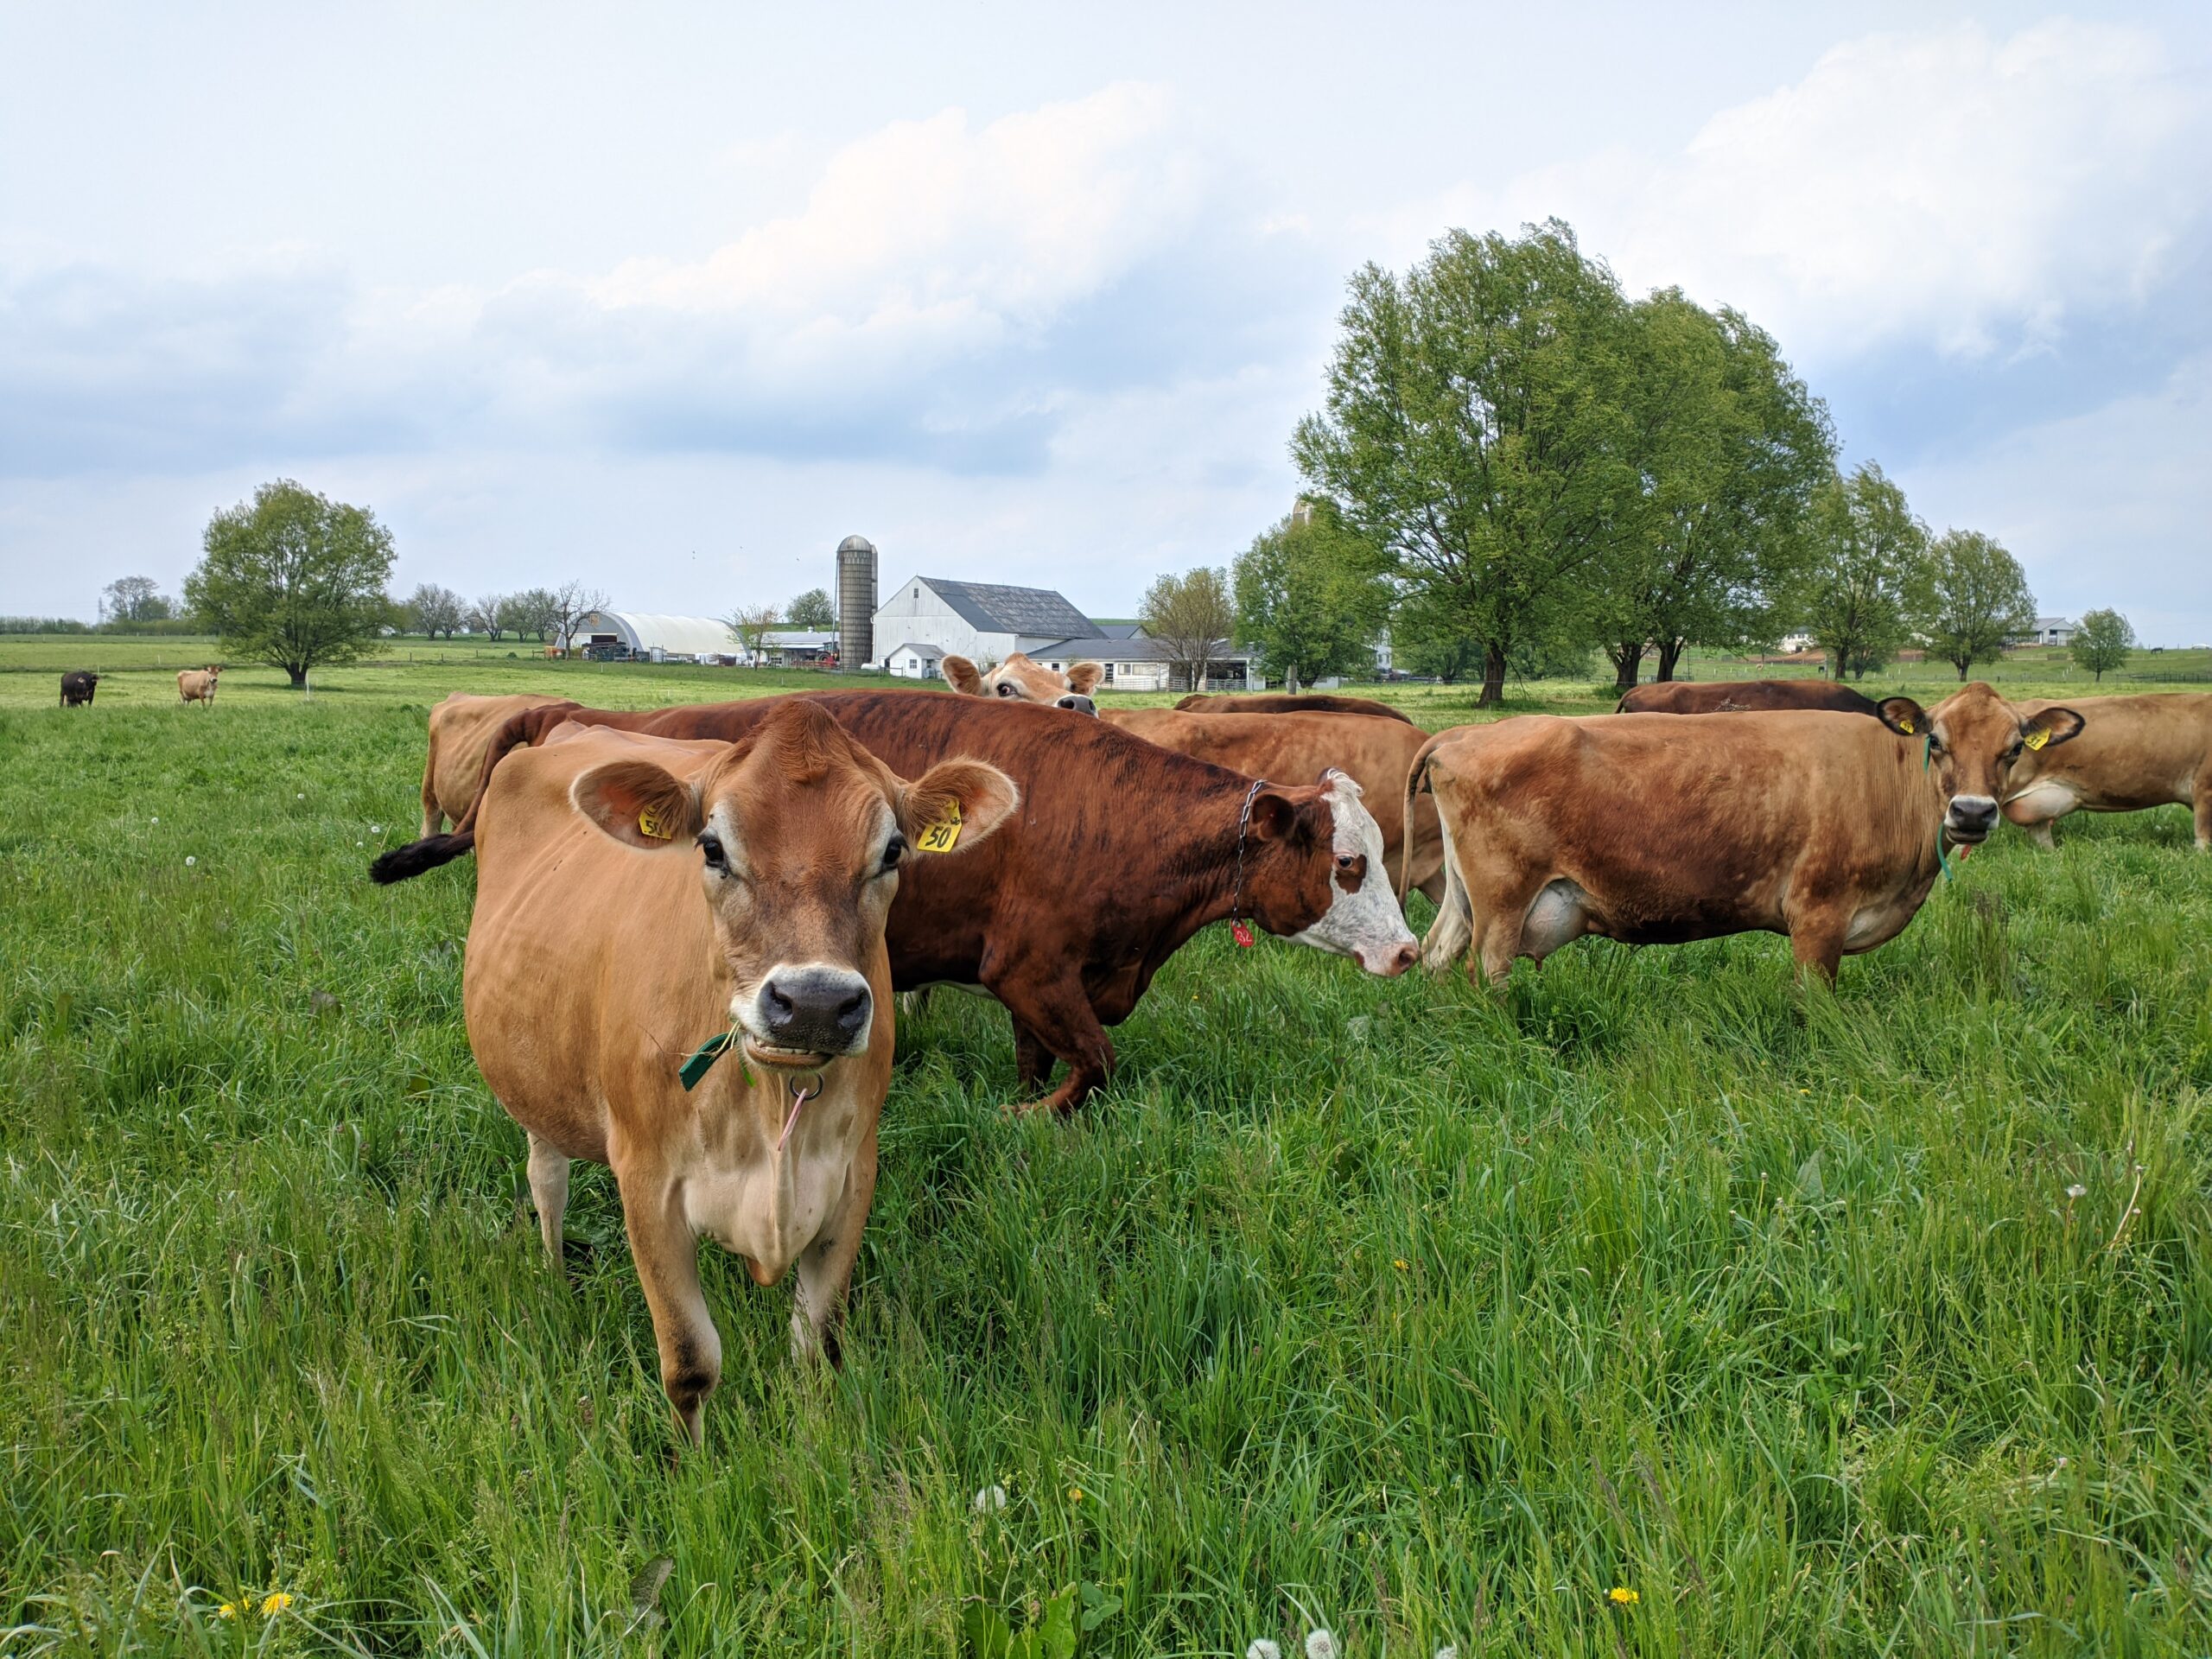 Raw dairy farm raid sparks freedom of food consumption debate